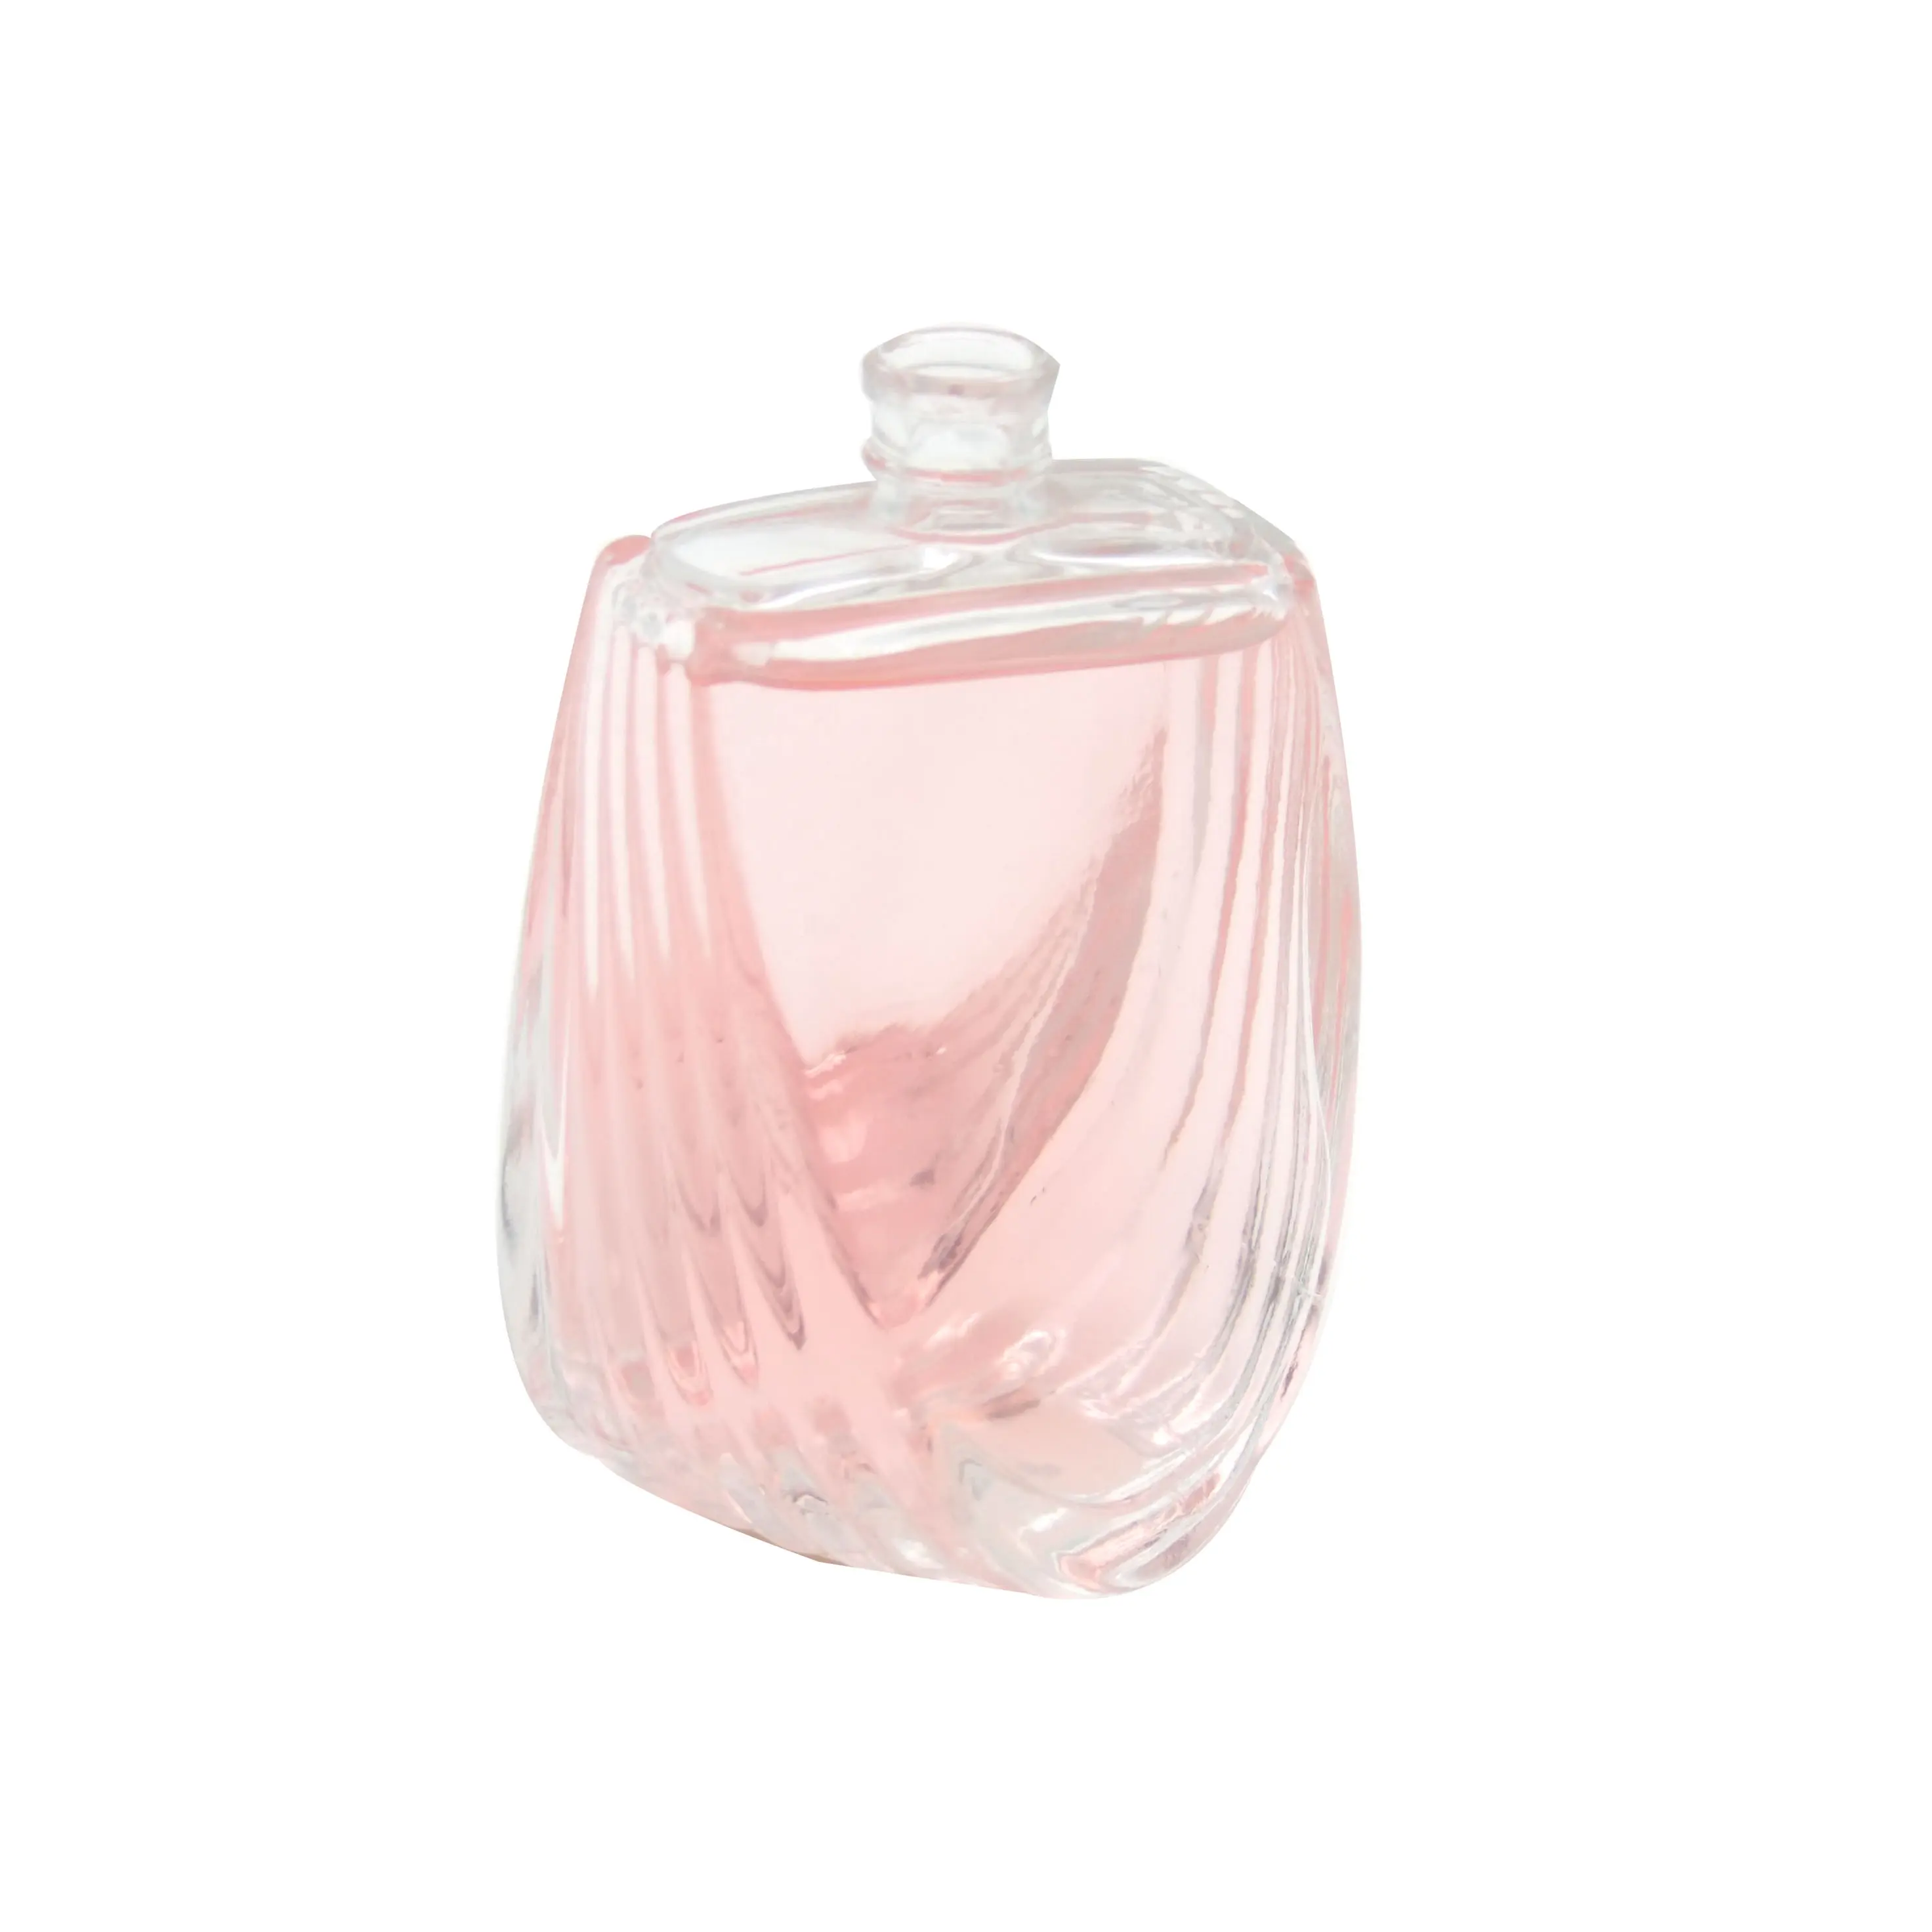 Parfüm glas flasche arabischen stil 50ml attar parfüm flasche HAODEXIN mode parfüm flasche